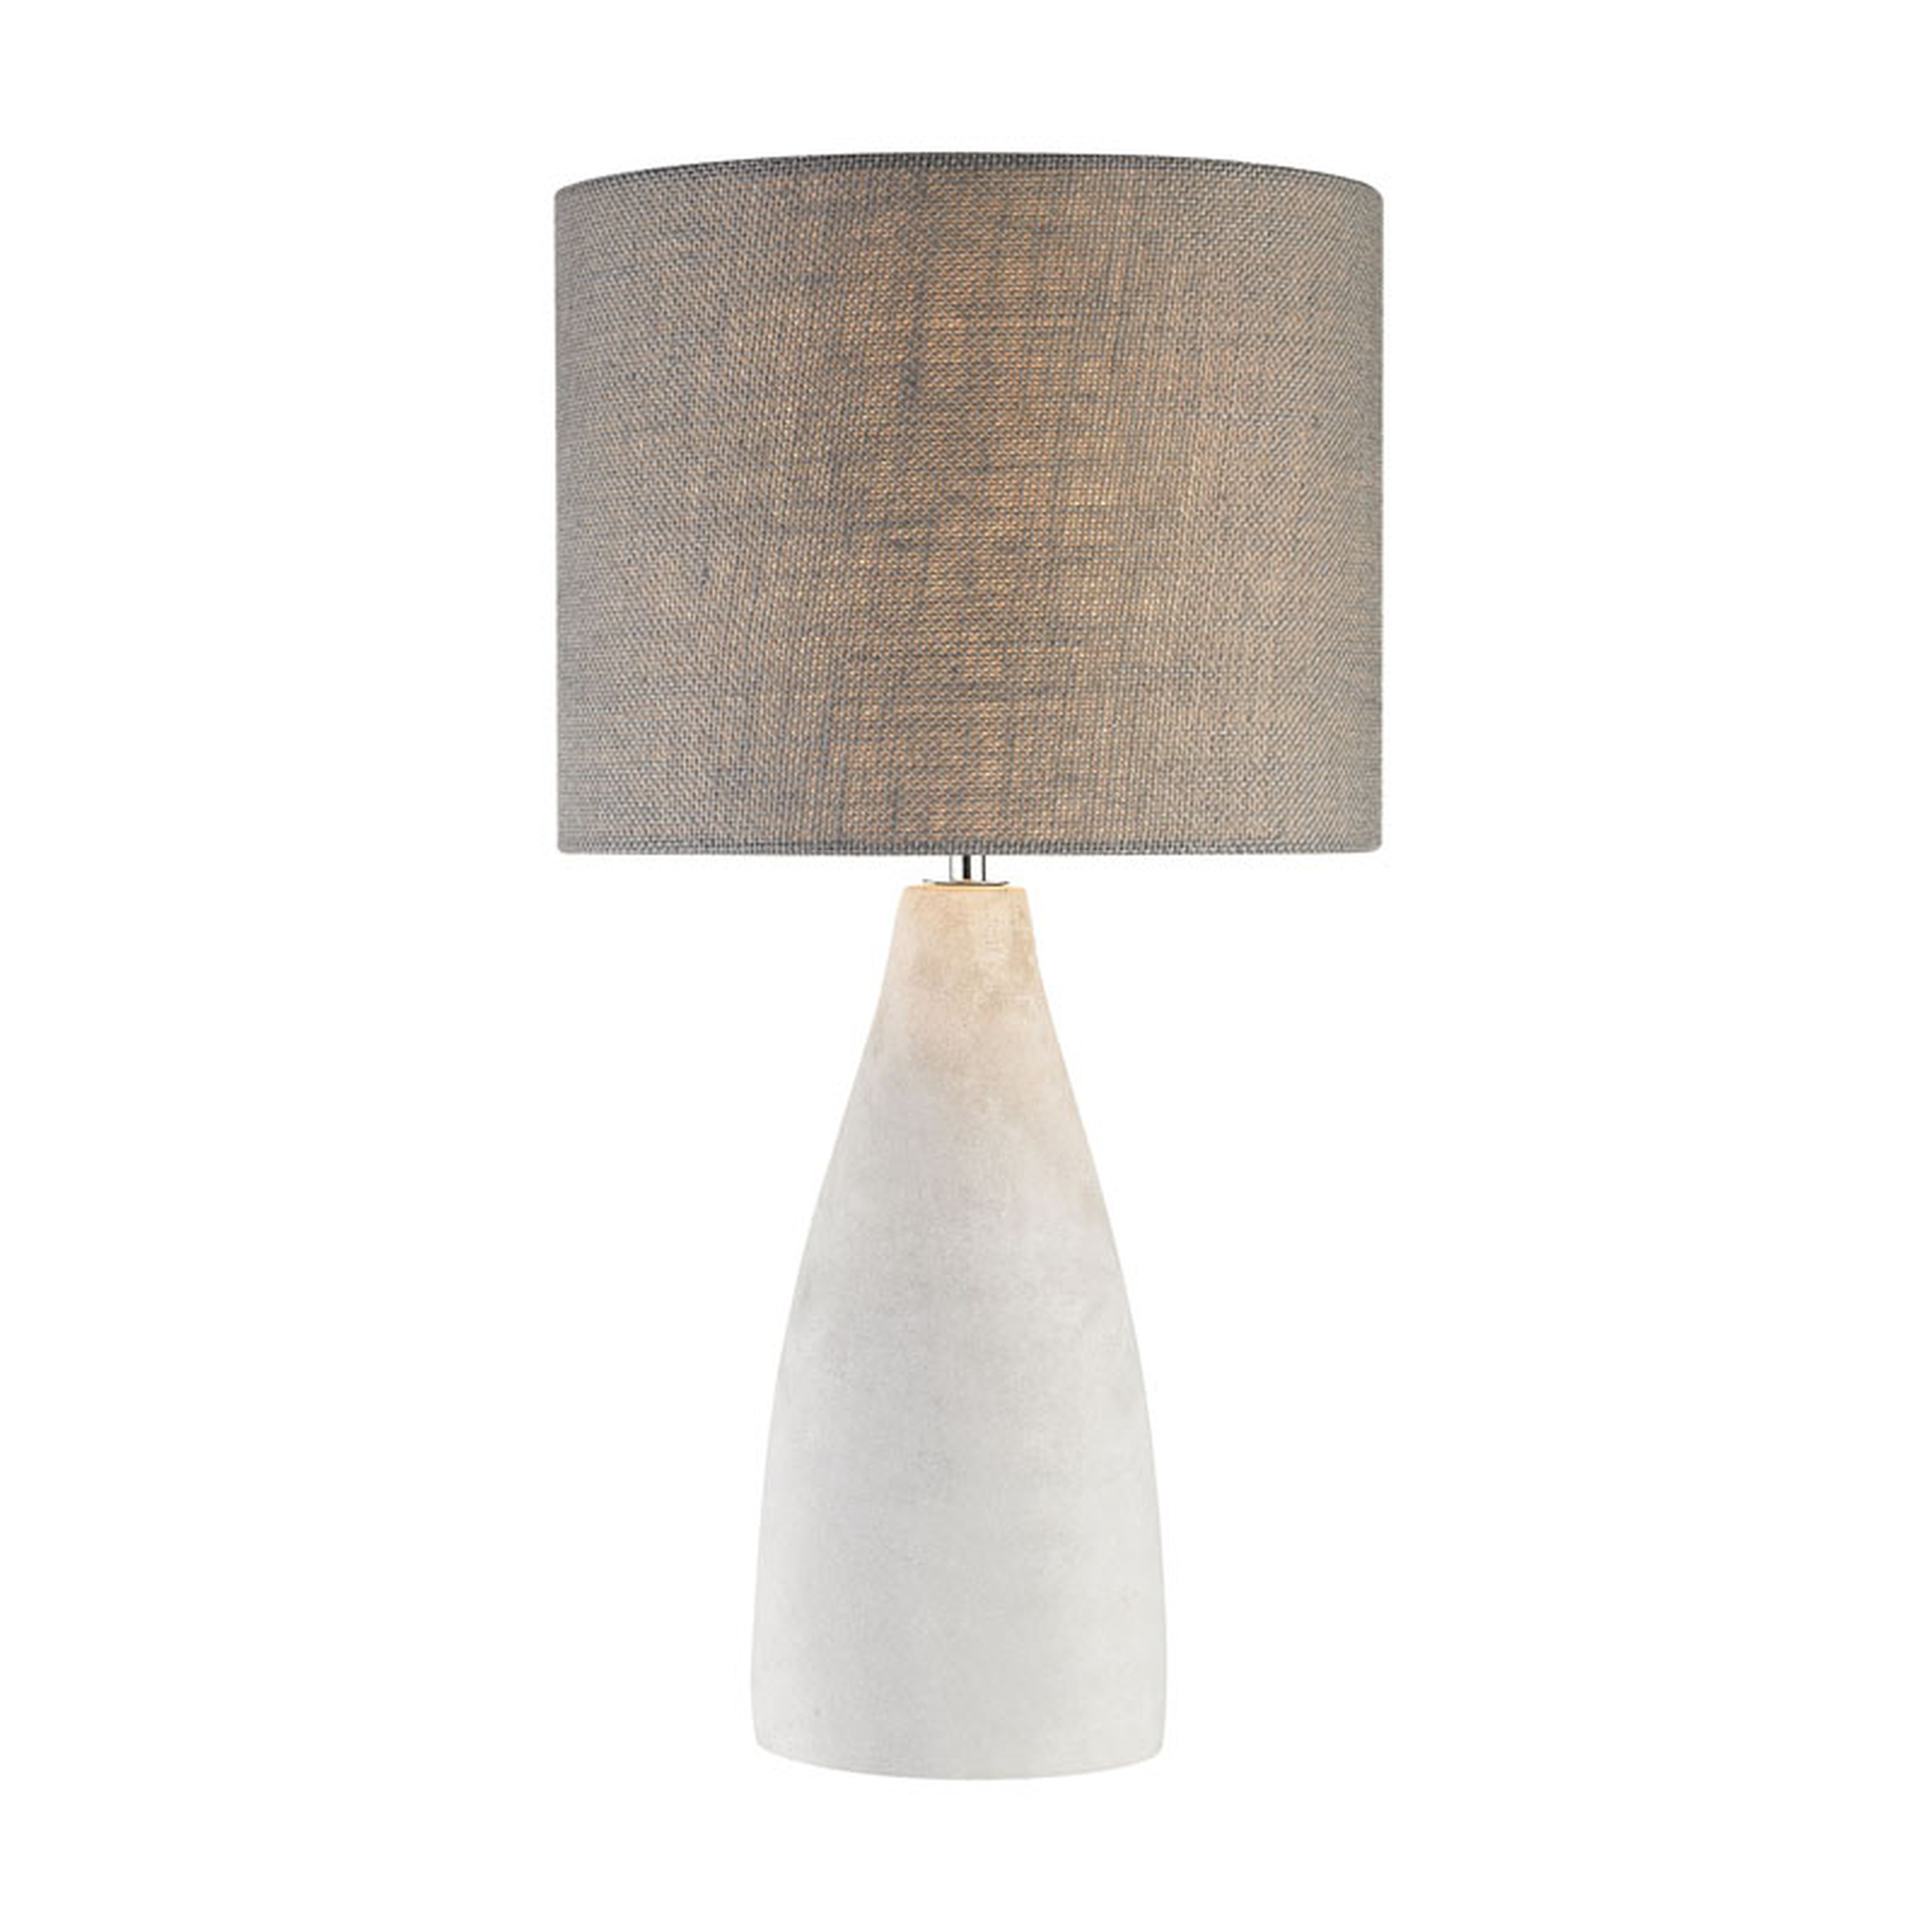 21" Rockport Light Table Lamp, Polished Concrete - Elk Home